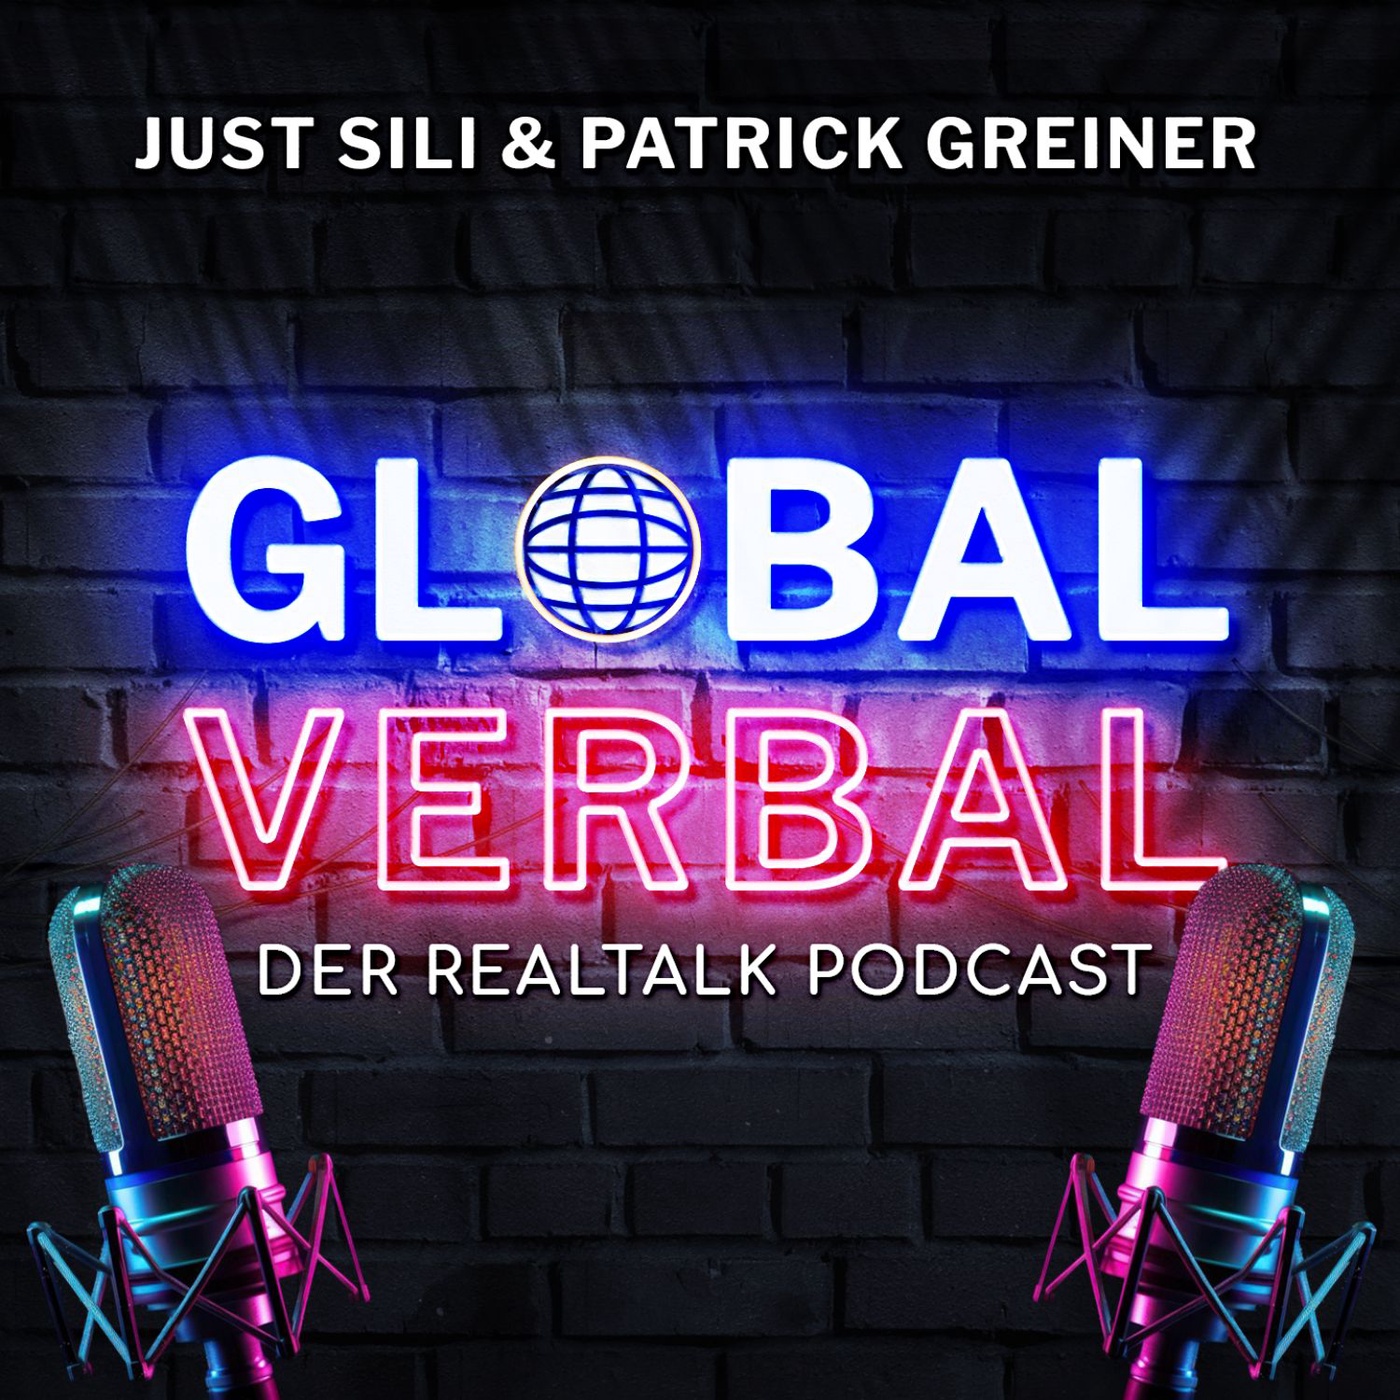 GLOBAL VERBAL: Der Realtalk (Video)Podcast